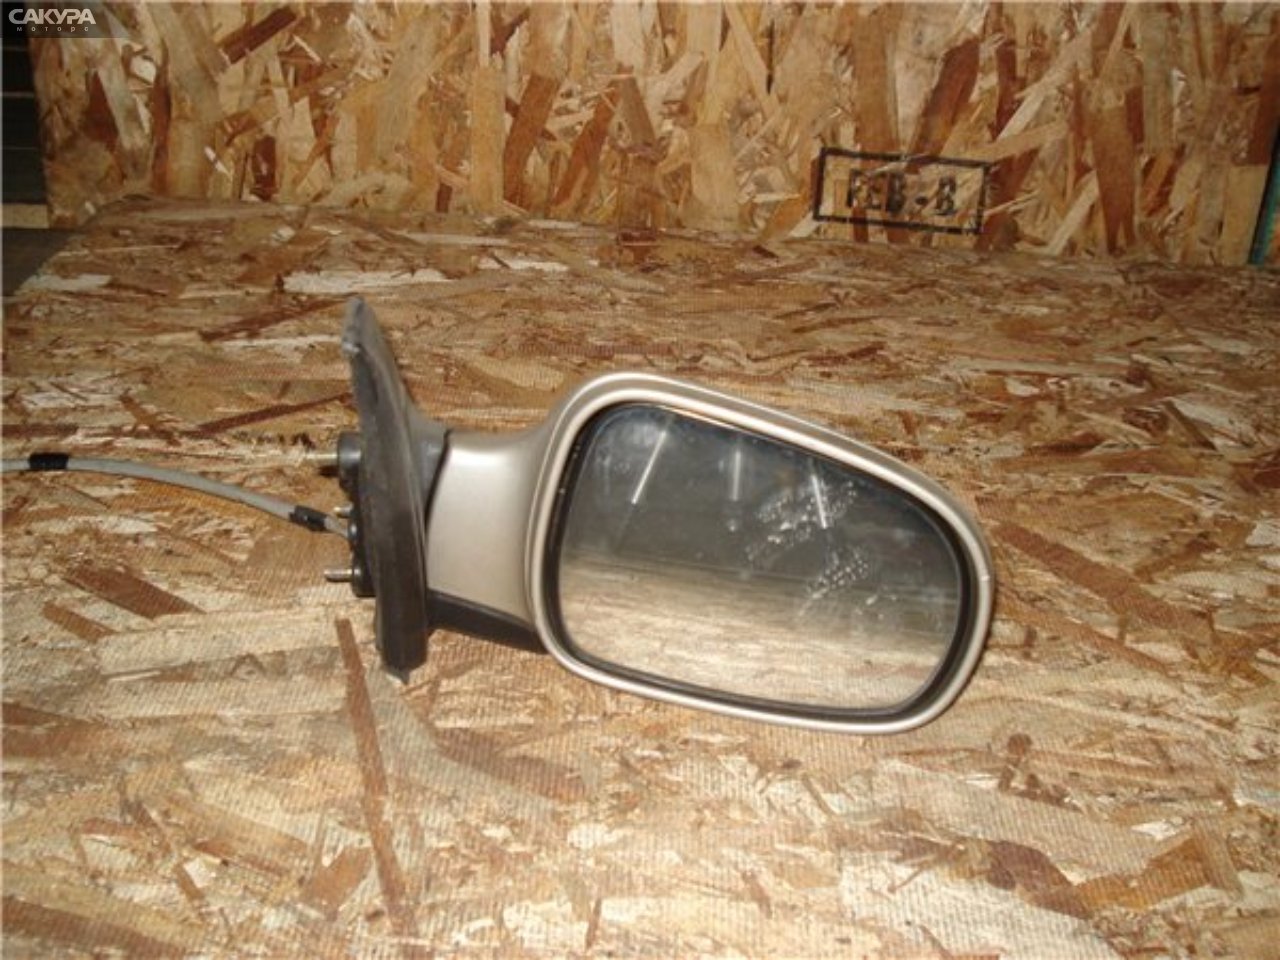 Зеркало боковое правое Daihatsu Storia M111S: купить в Сакура Красноярск.